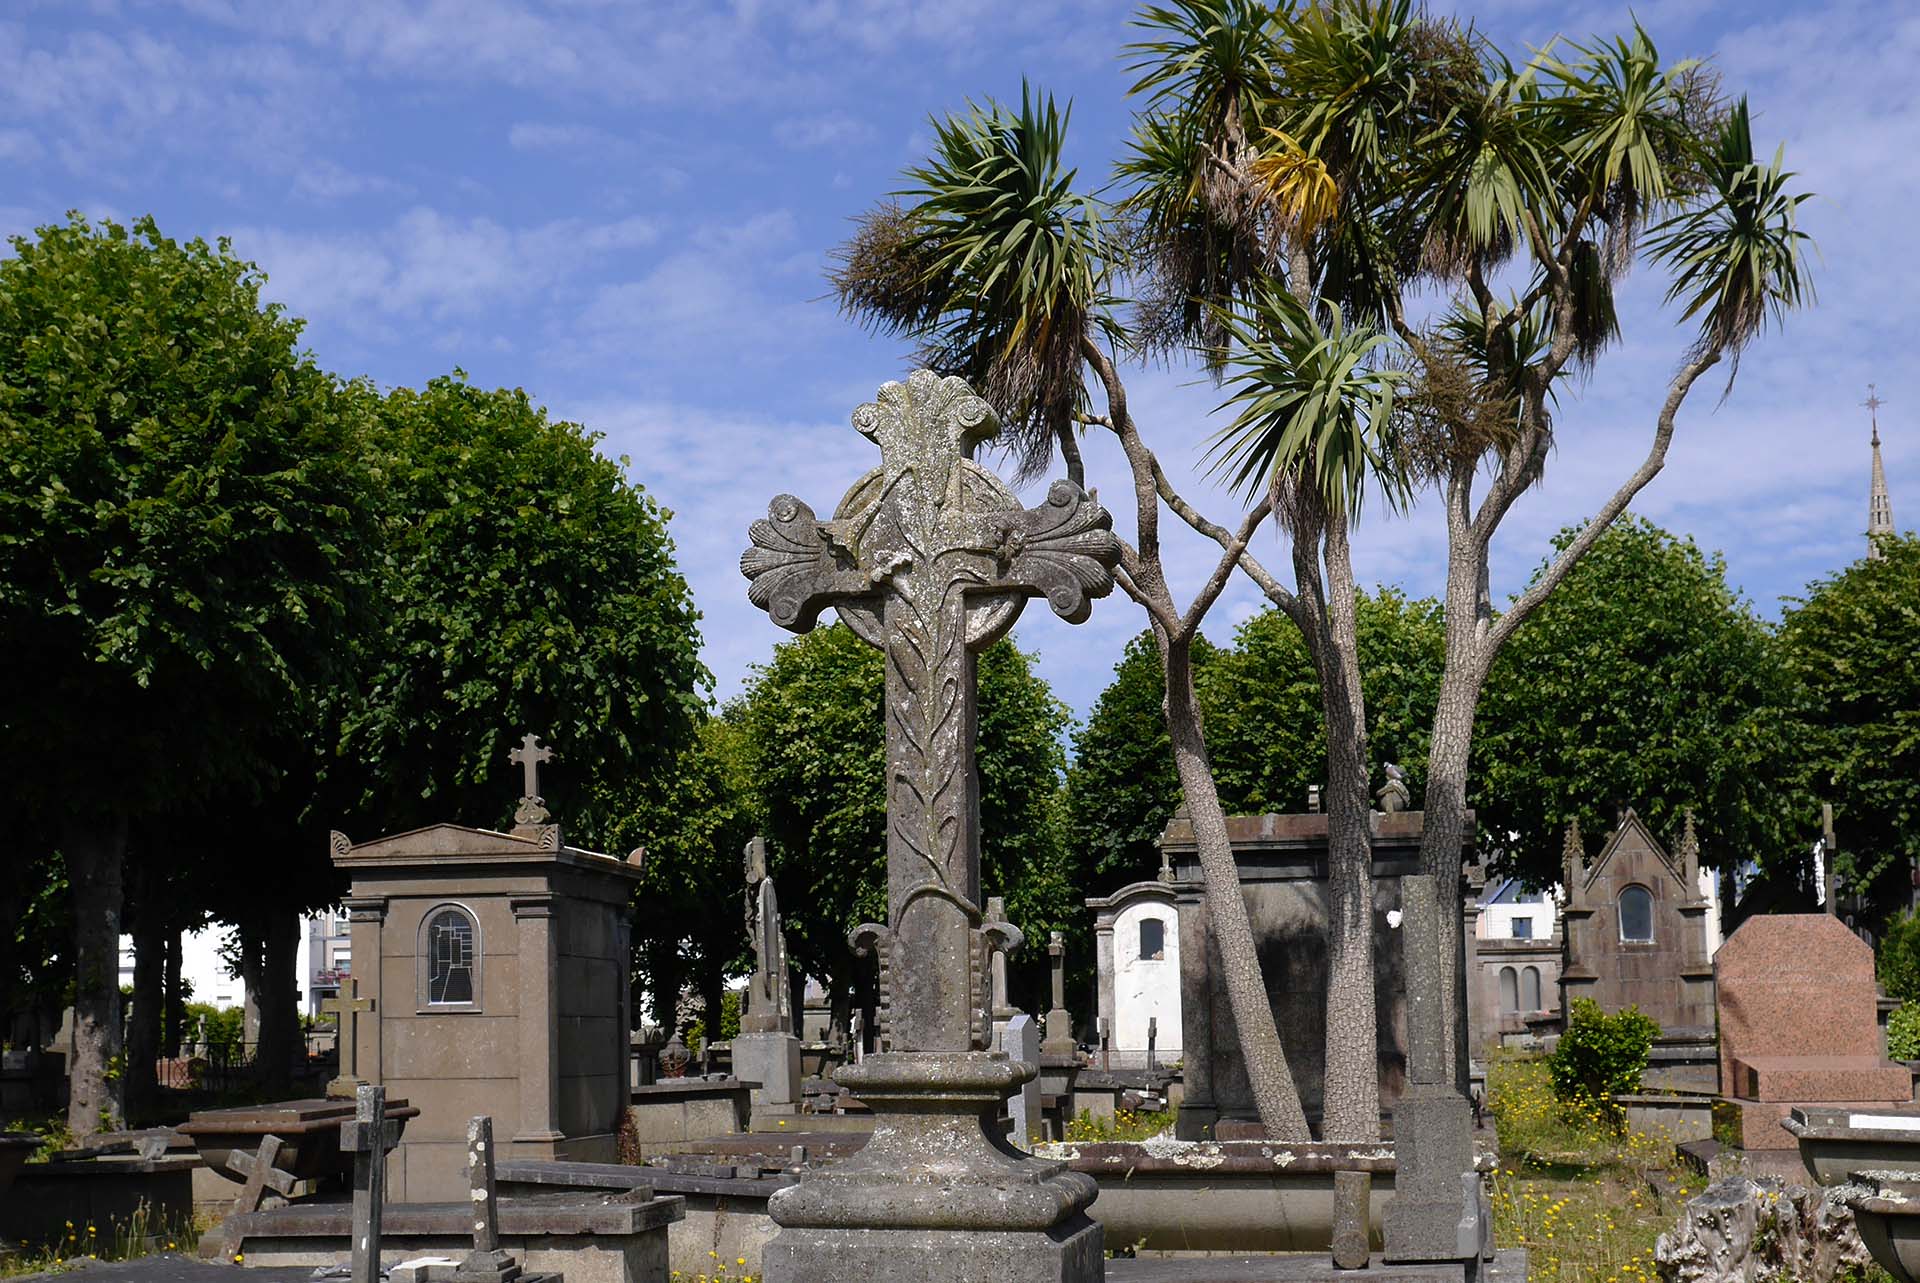 Tombes du cimetière St Martin Brest France Graves in St Martin cemetery Brest France